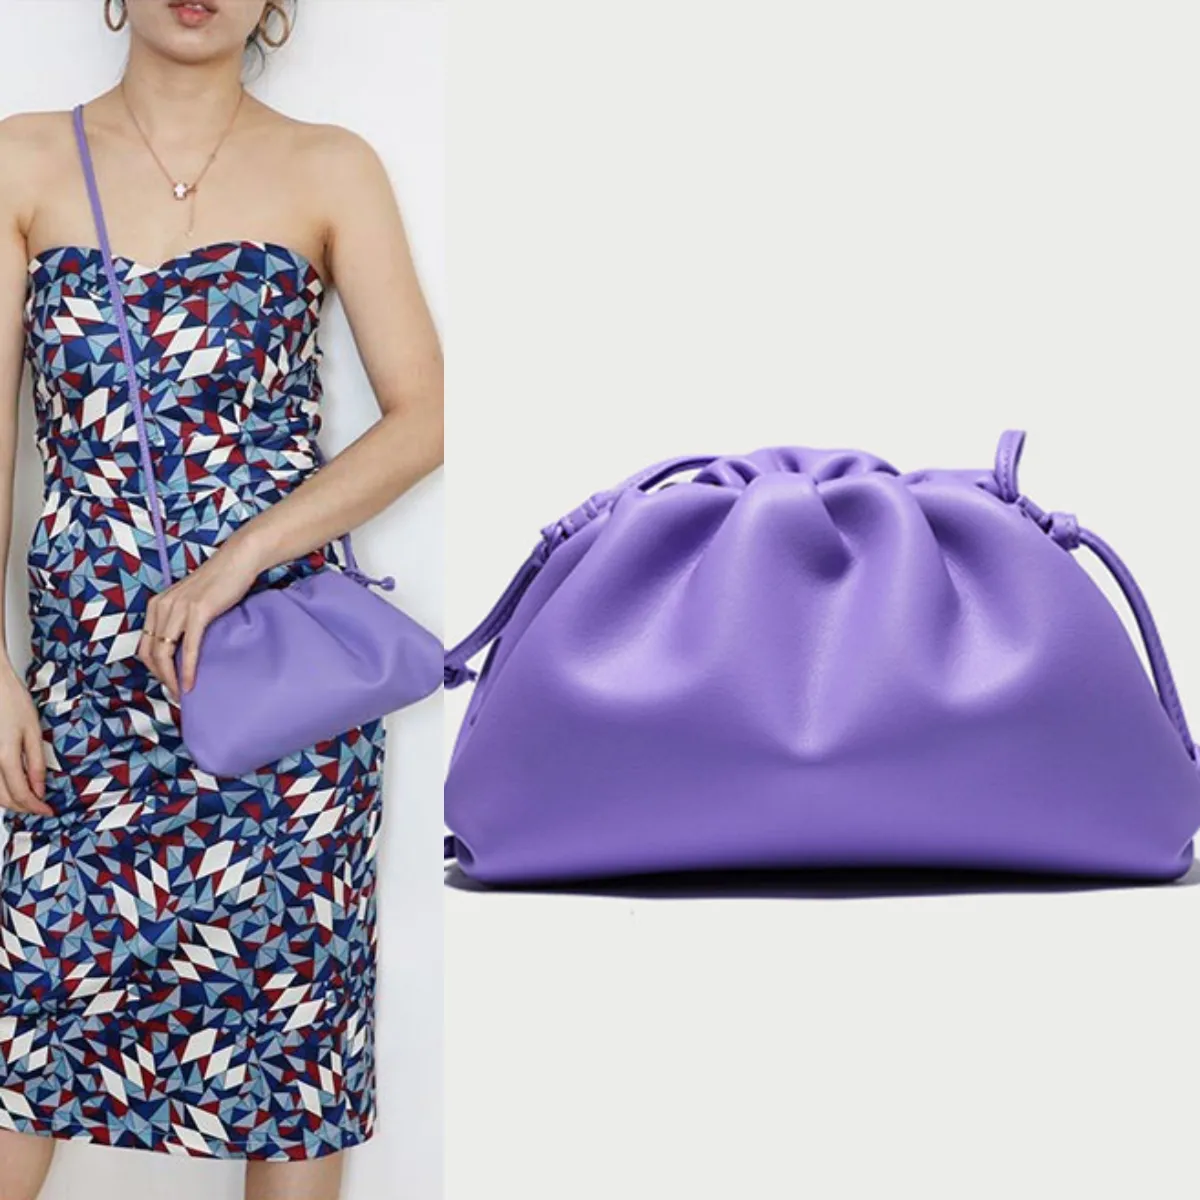 REWIN tas selempang kulit asli wanita kualitas tinggi dengan bukaan logam tali tas tangan genggam praktis untuk wanita